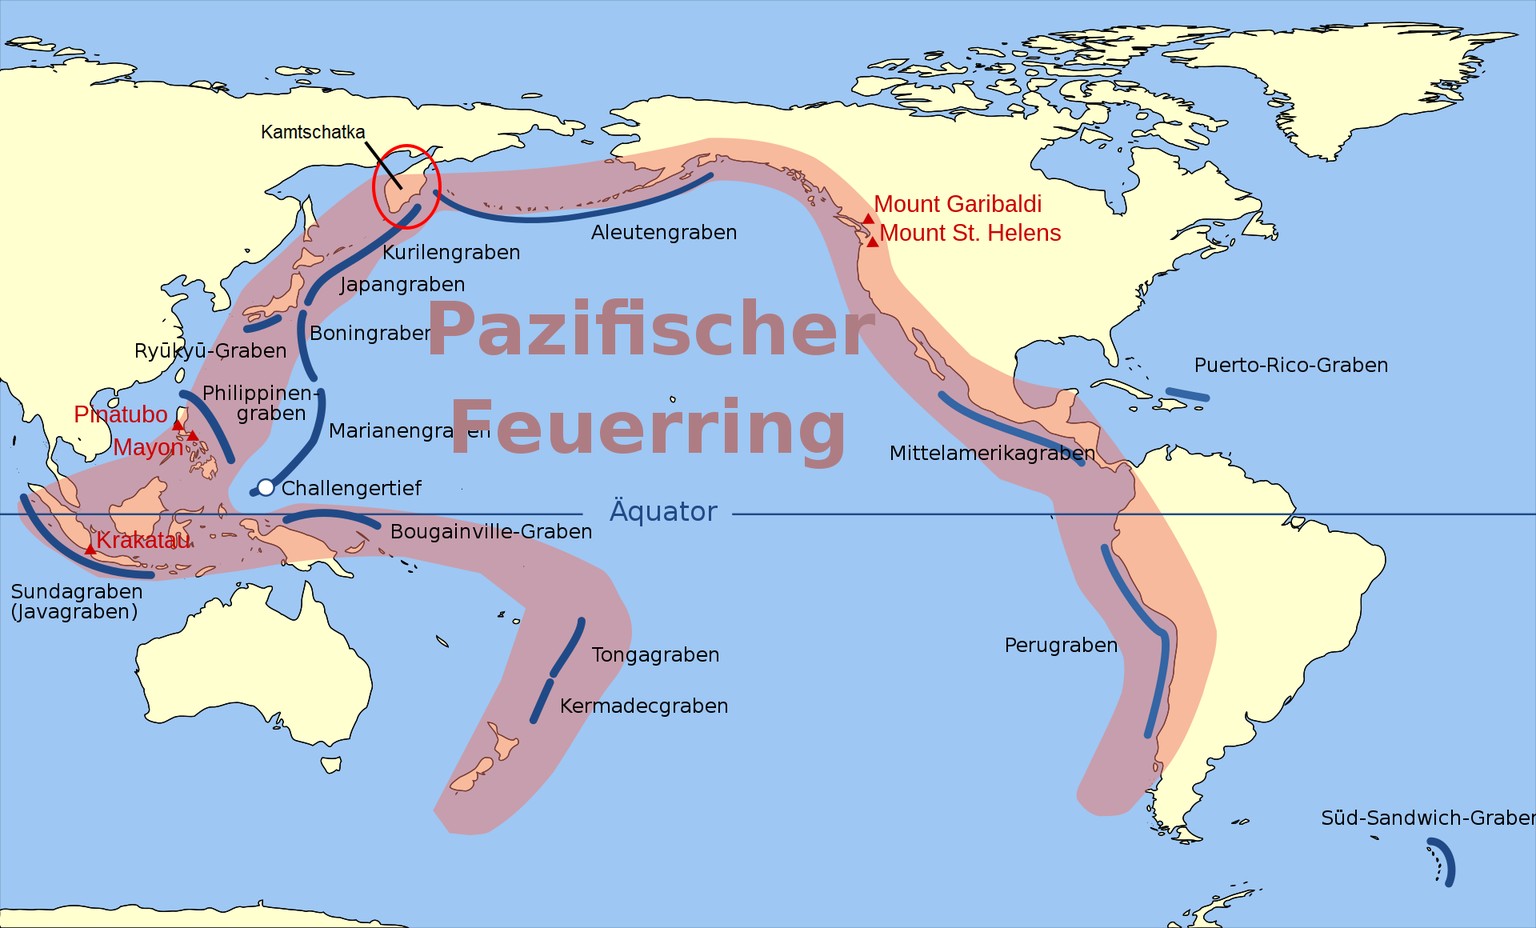 Pazifischer Feuerring mit Kamtschatka
https://de.wikipedia.org/wiki/Pazifischer_Feuerring#/media/Datei:Pacific_Ring_of_Fire-de.svg